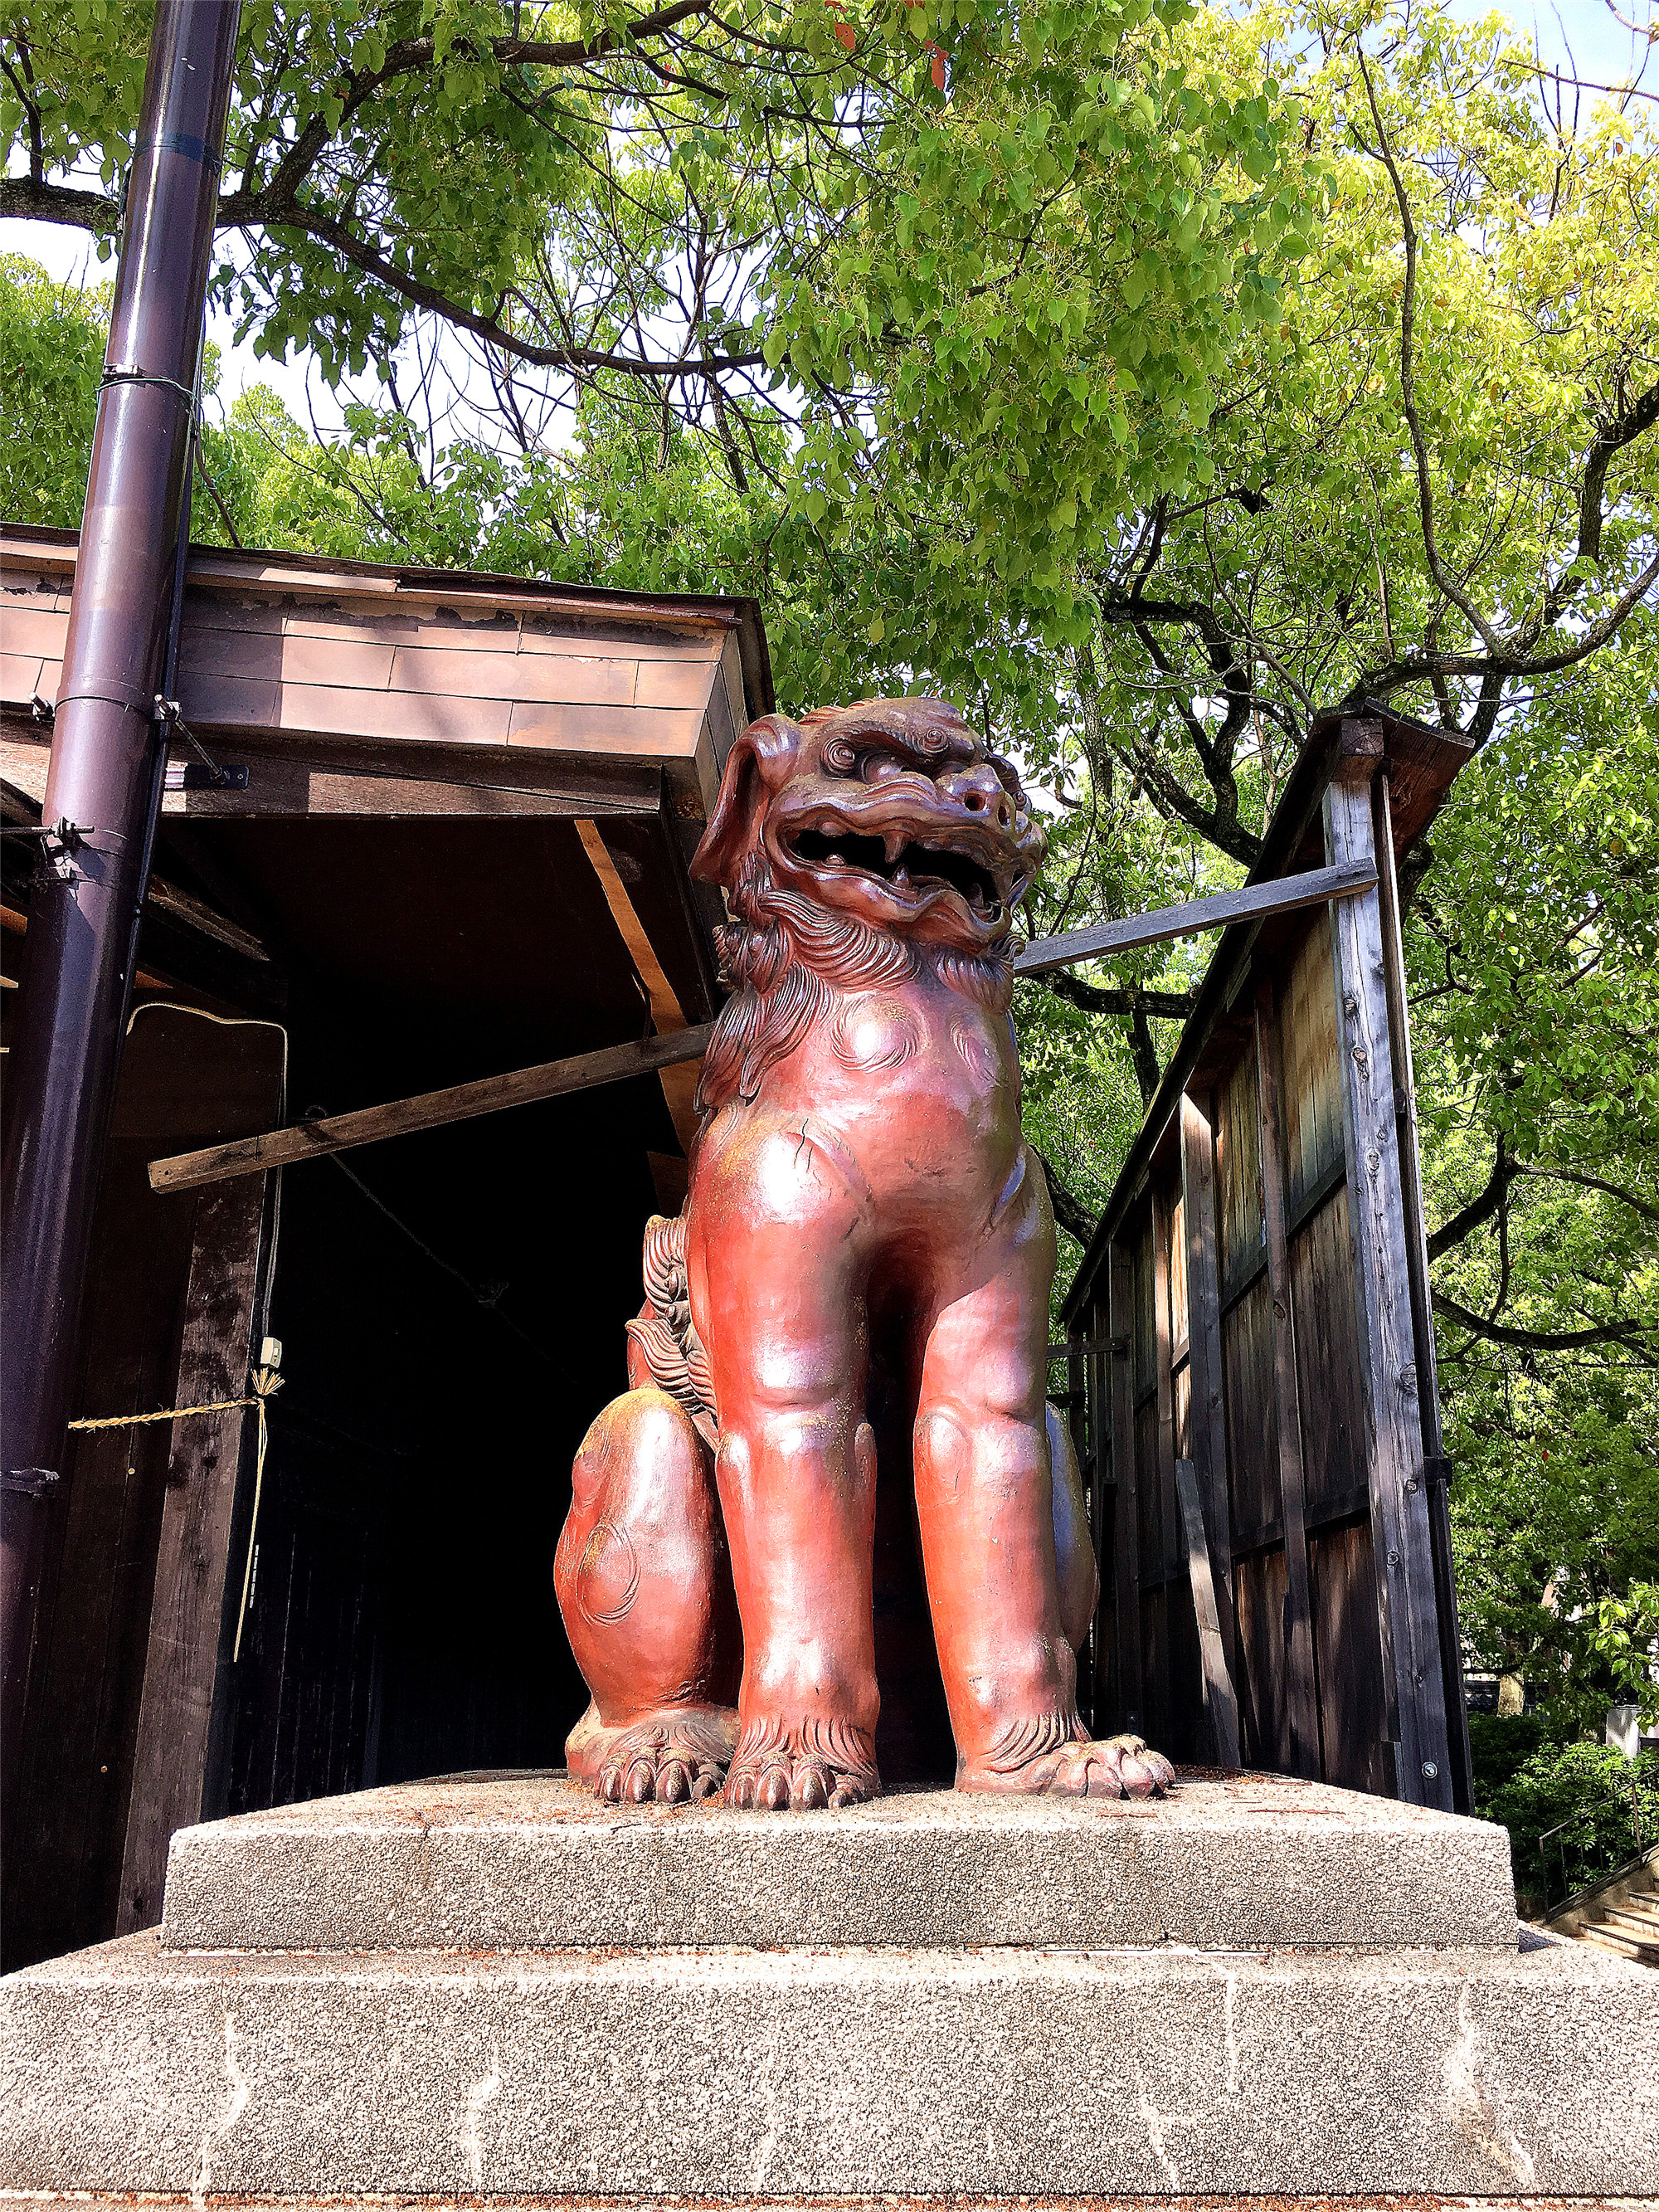 凑川神社图片